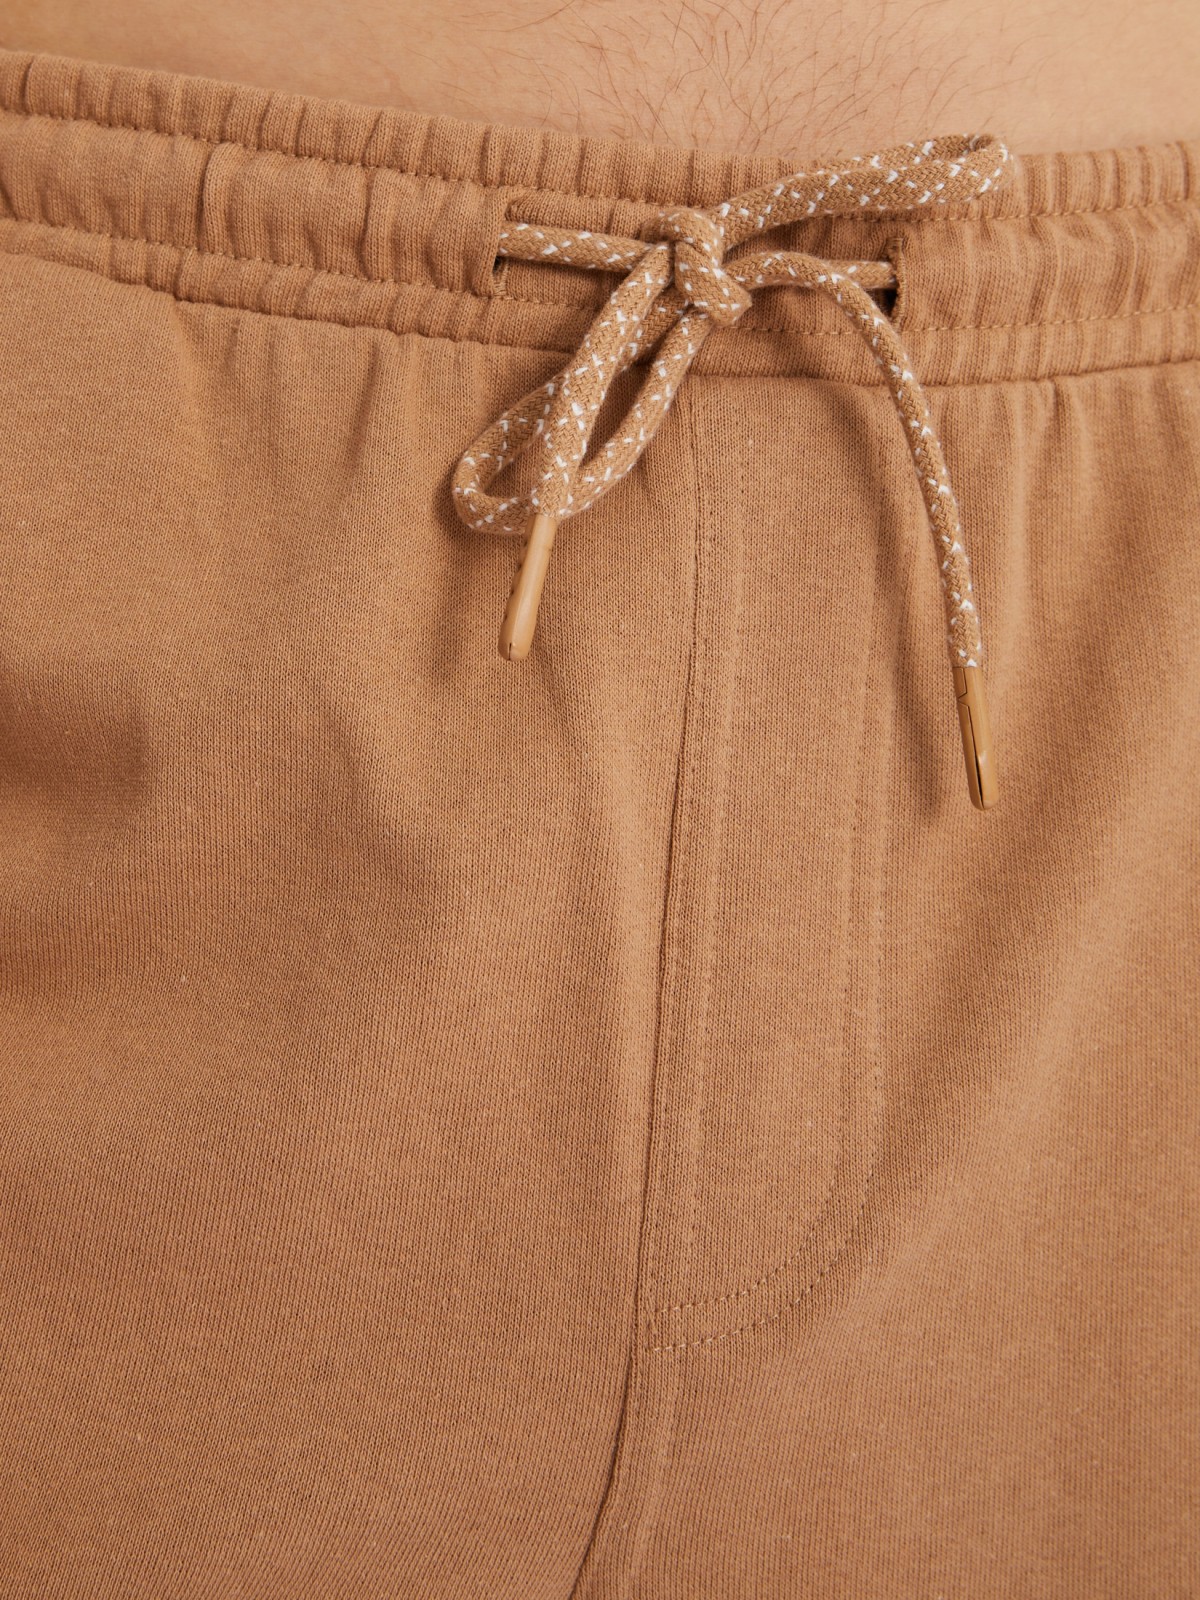 Трикотажные шорты на резинке из хлопка zolla 213317J5Q012, цвет бежевый, размер XS - фото 4